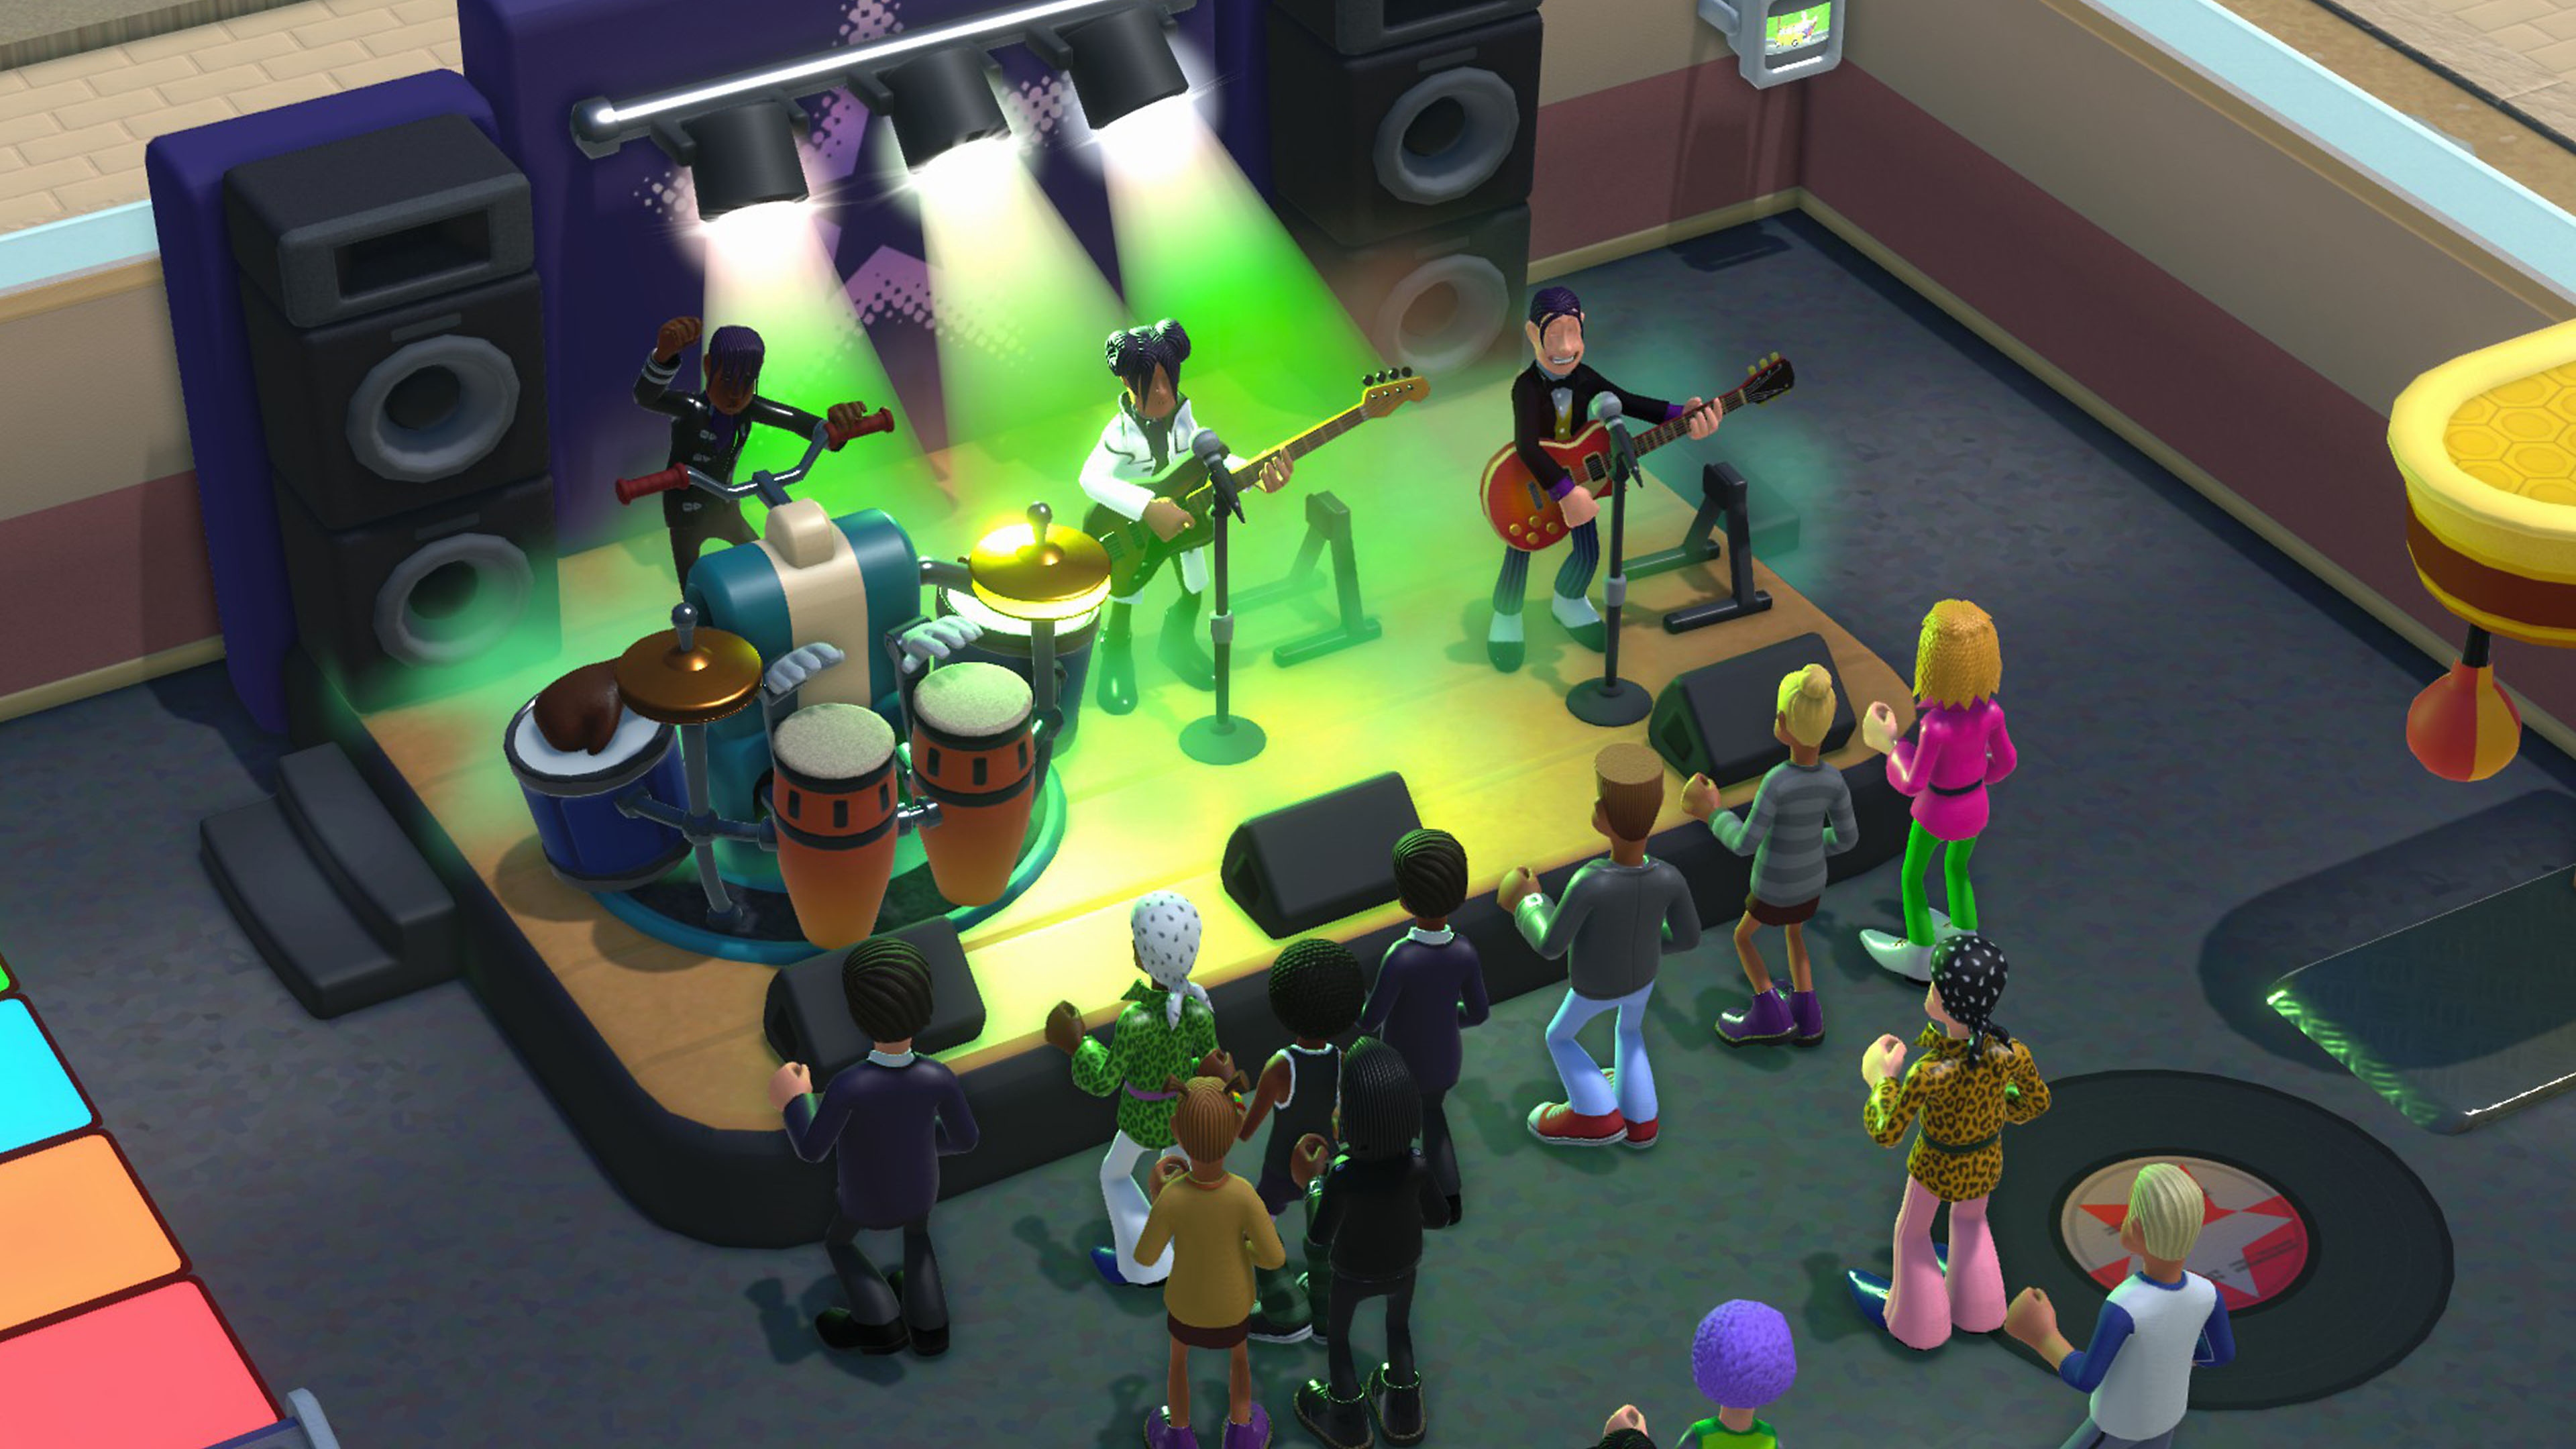 Screenshot van Two Point Campus met daarop een band die optreedt op een podium